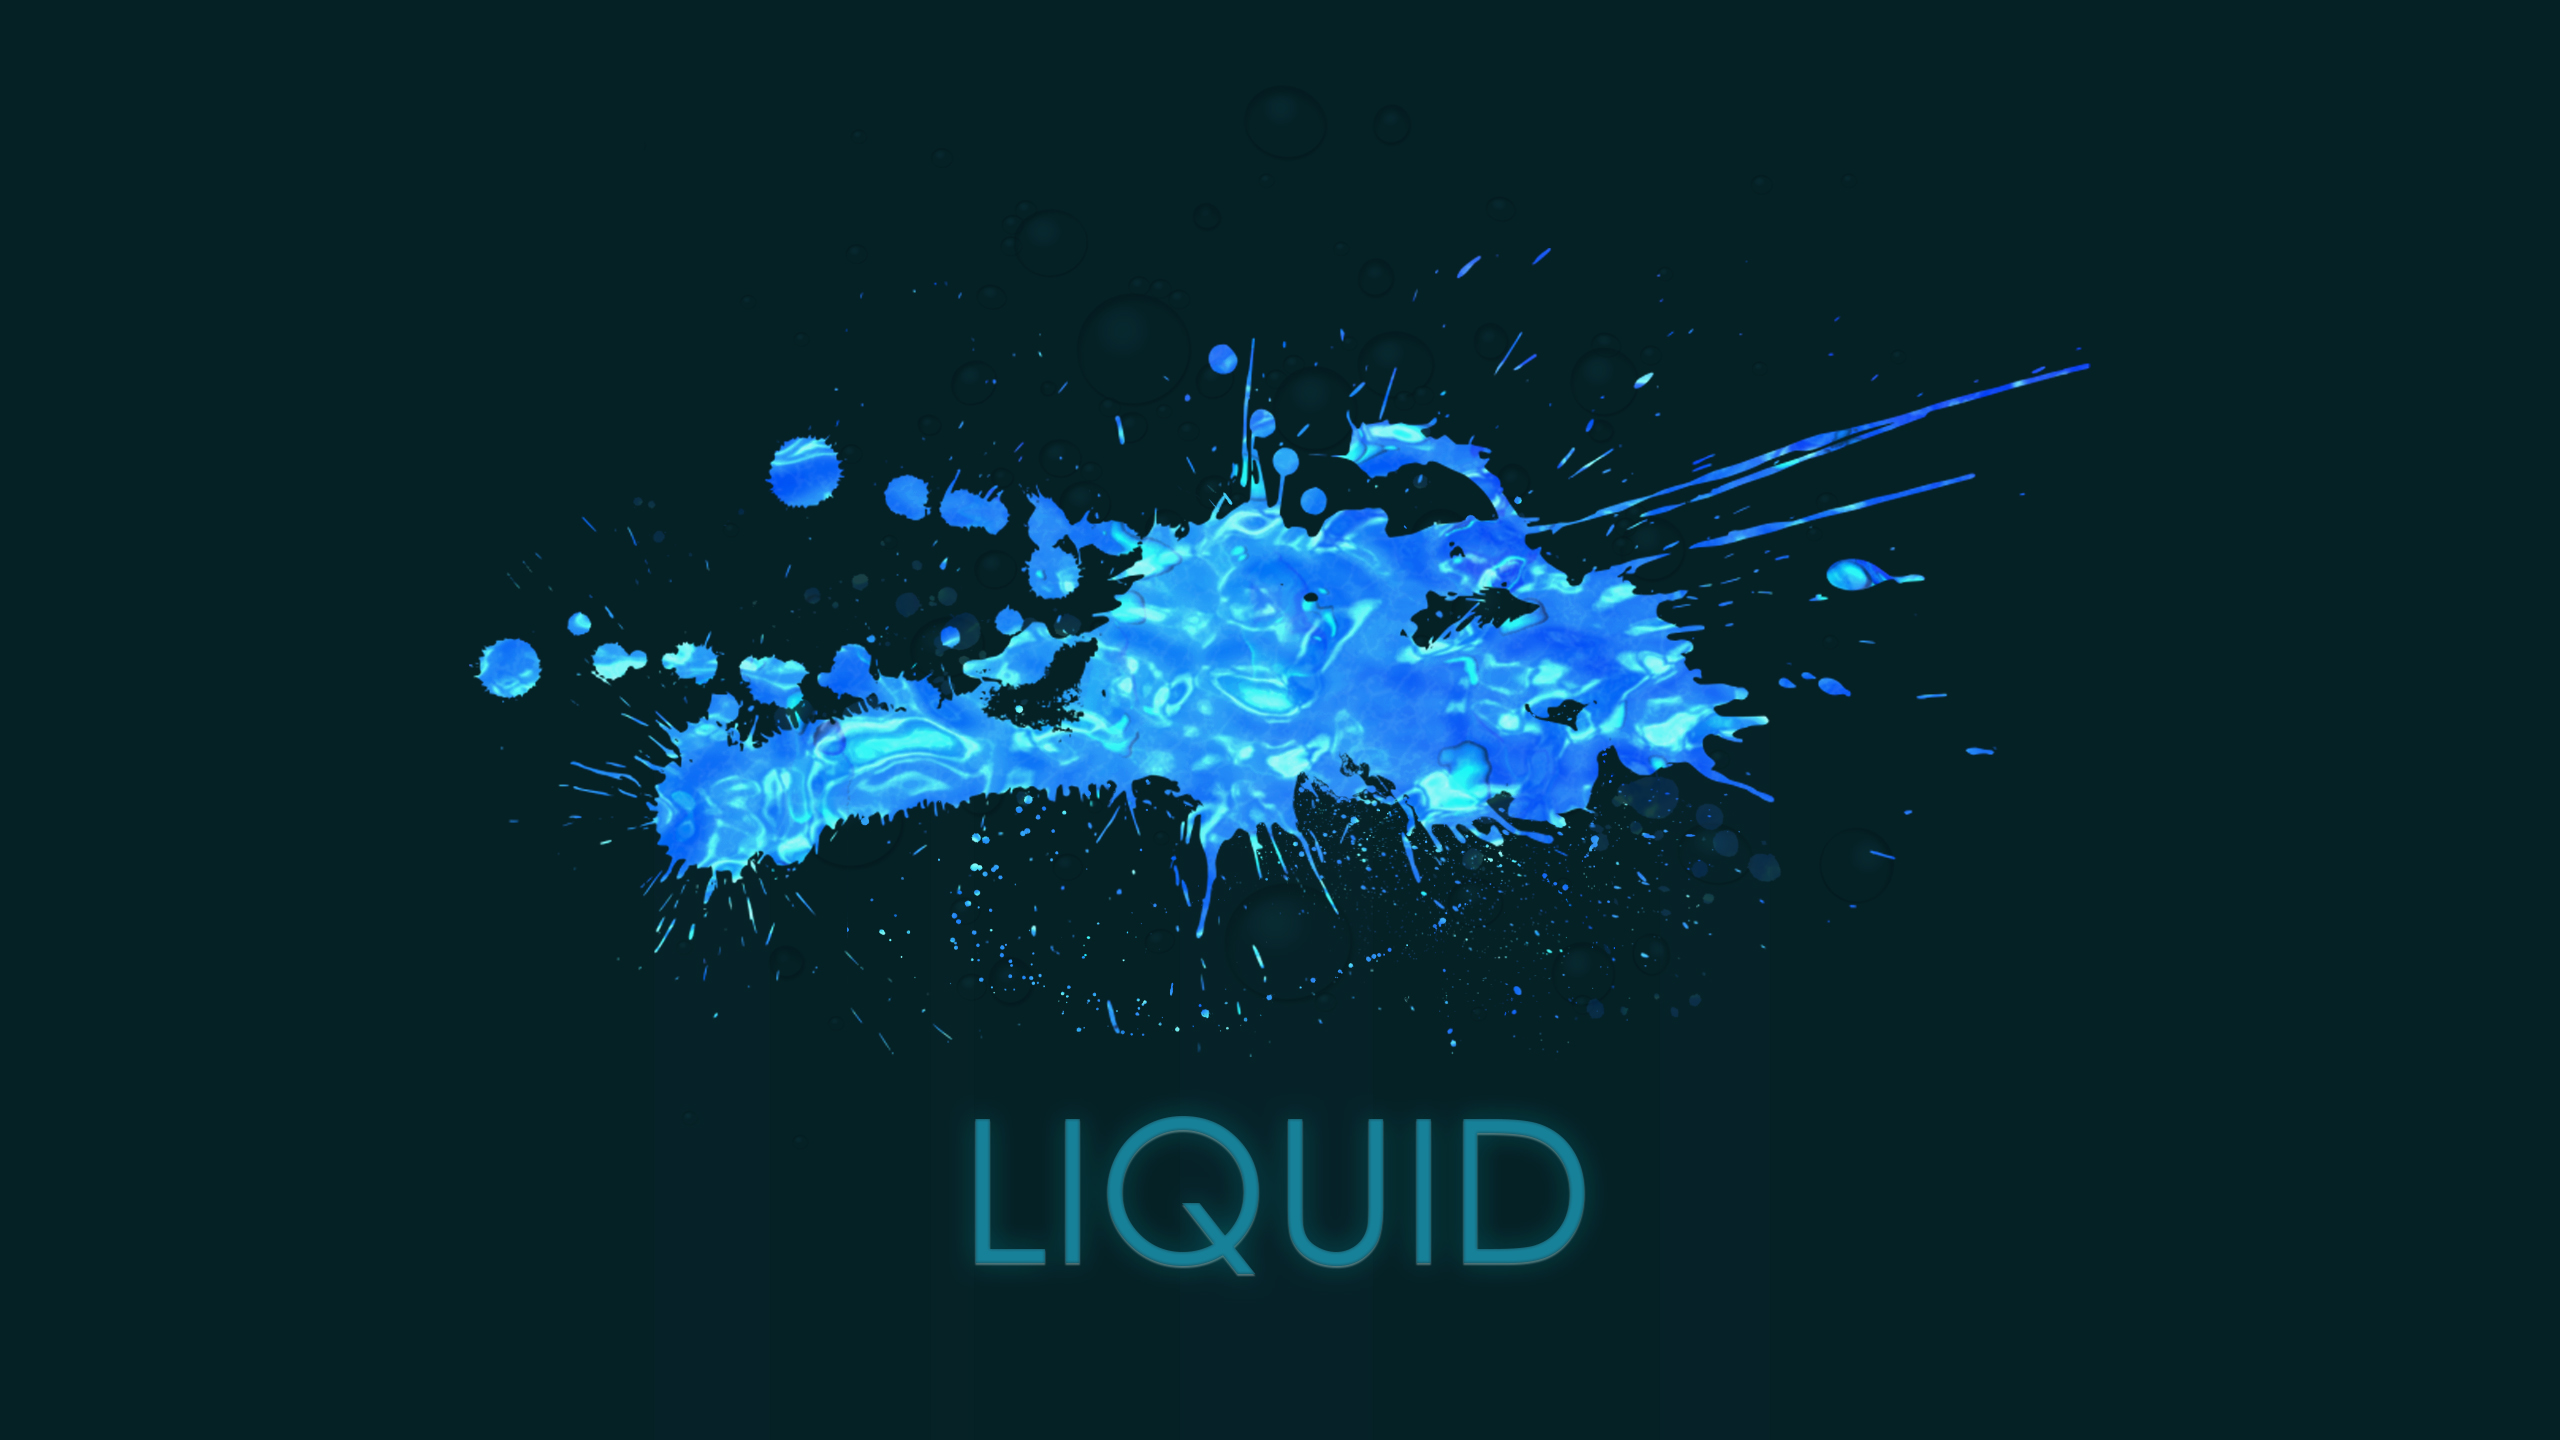 General 2560x1440 minimalism text aqua liquid cyan